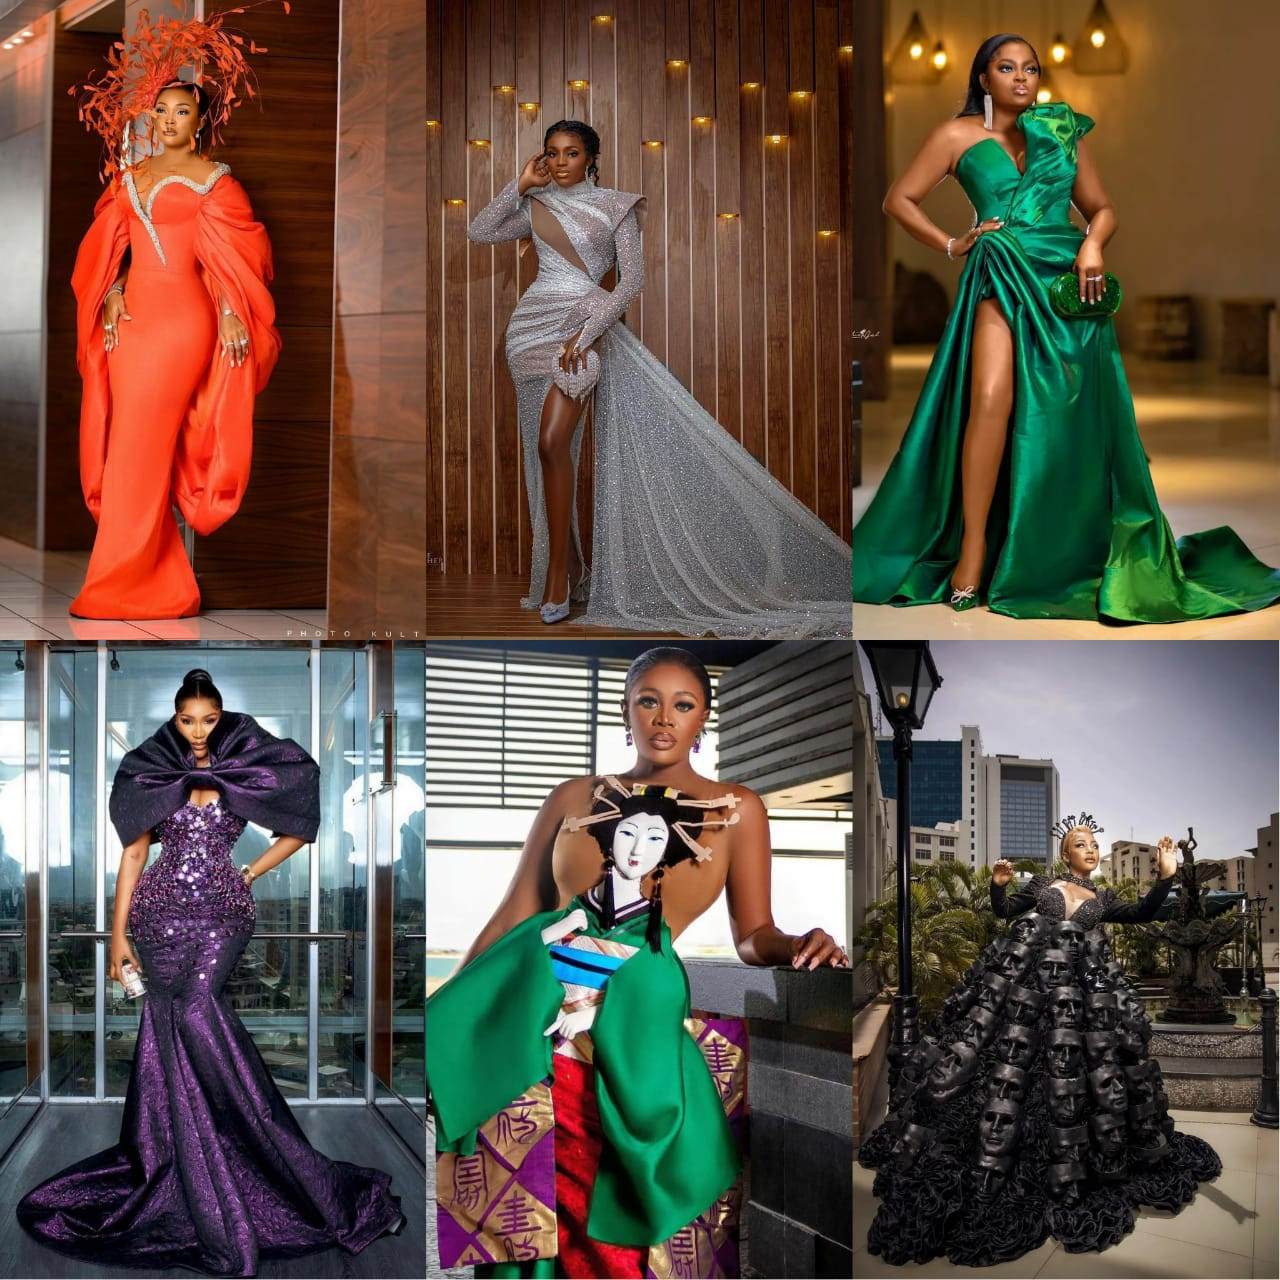 Funke Akindele, JJC Skillz, Shaffy Bello, Nengi, Erica, Juliet Ibrahim, Ebuka, Mercy Aigbe - See first photos from #AMVCA2022